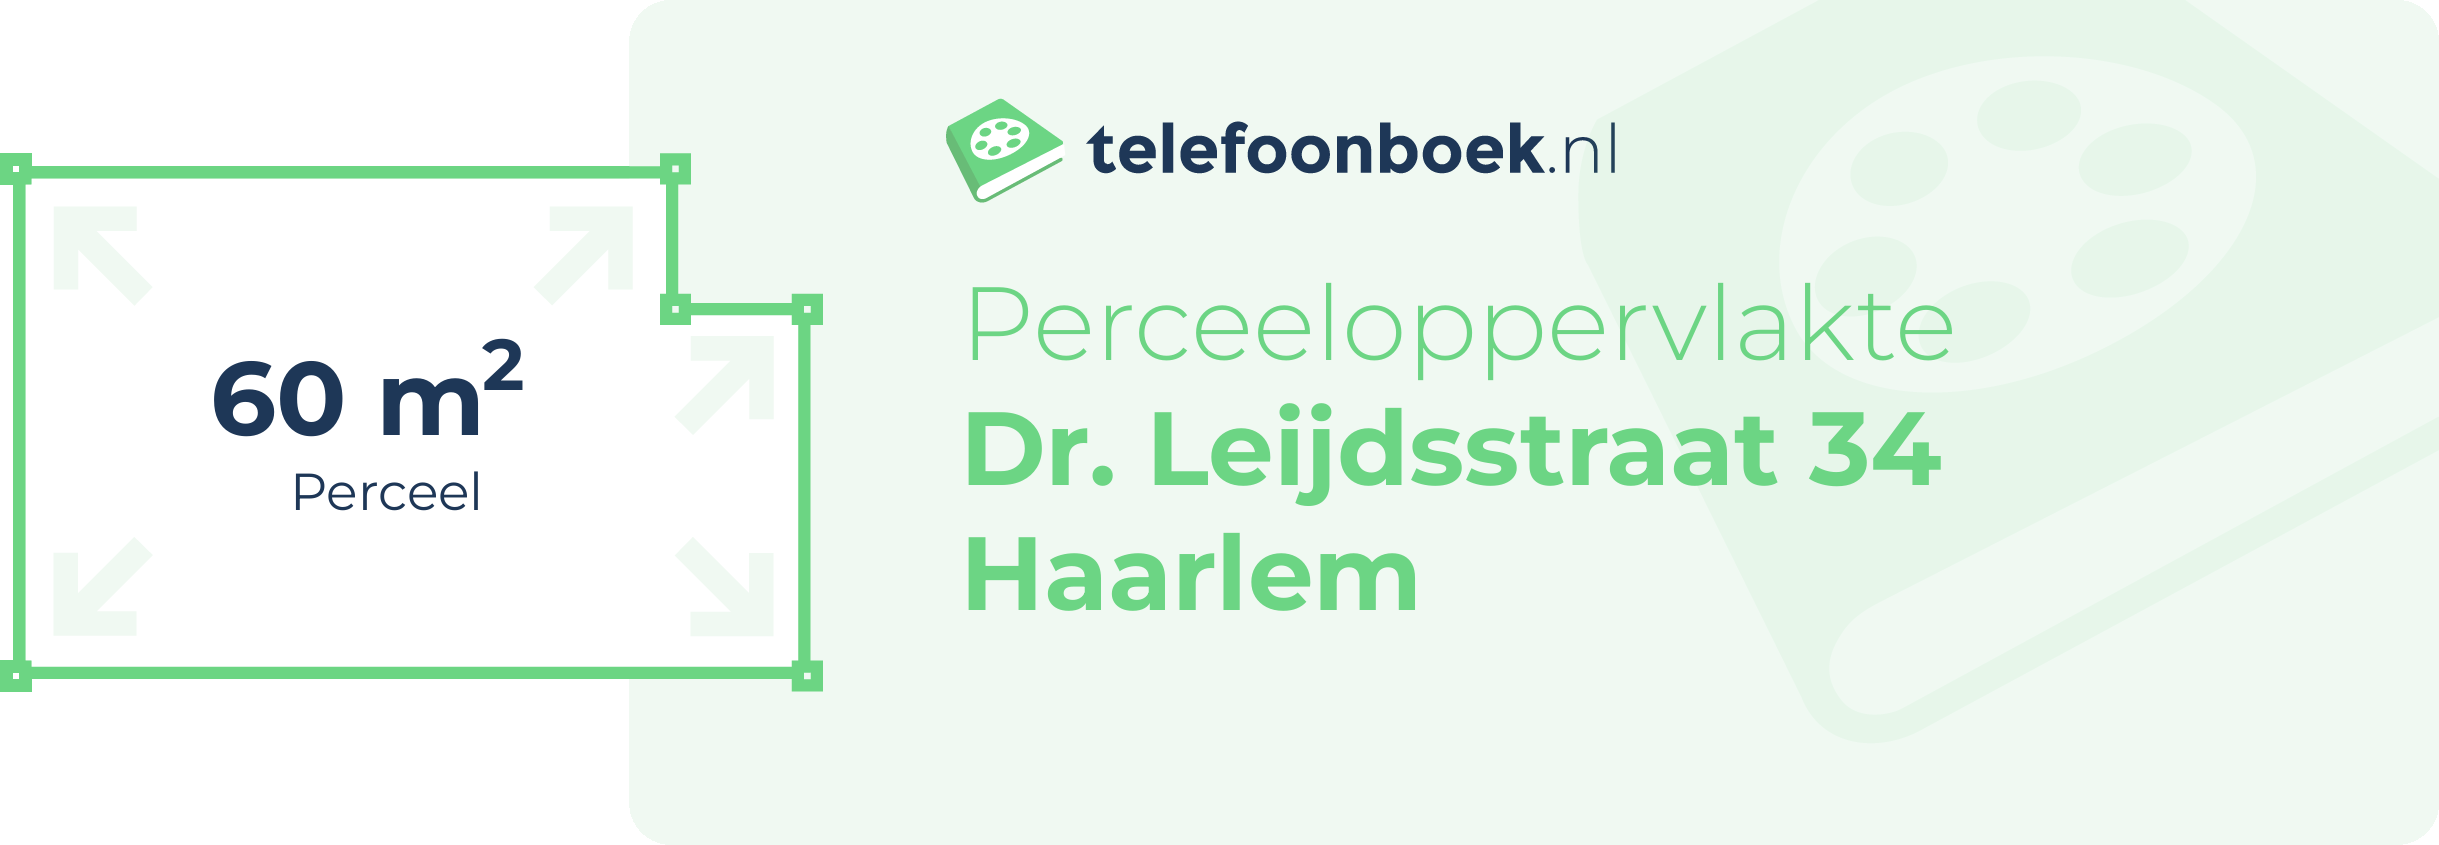 Perceeloppervlakte Dr. Leijdsstraat 34 Haarlem